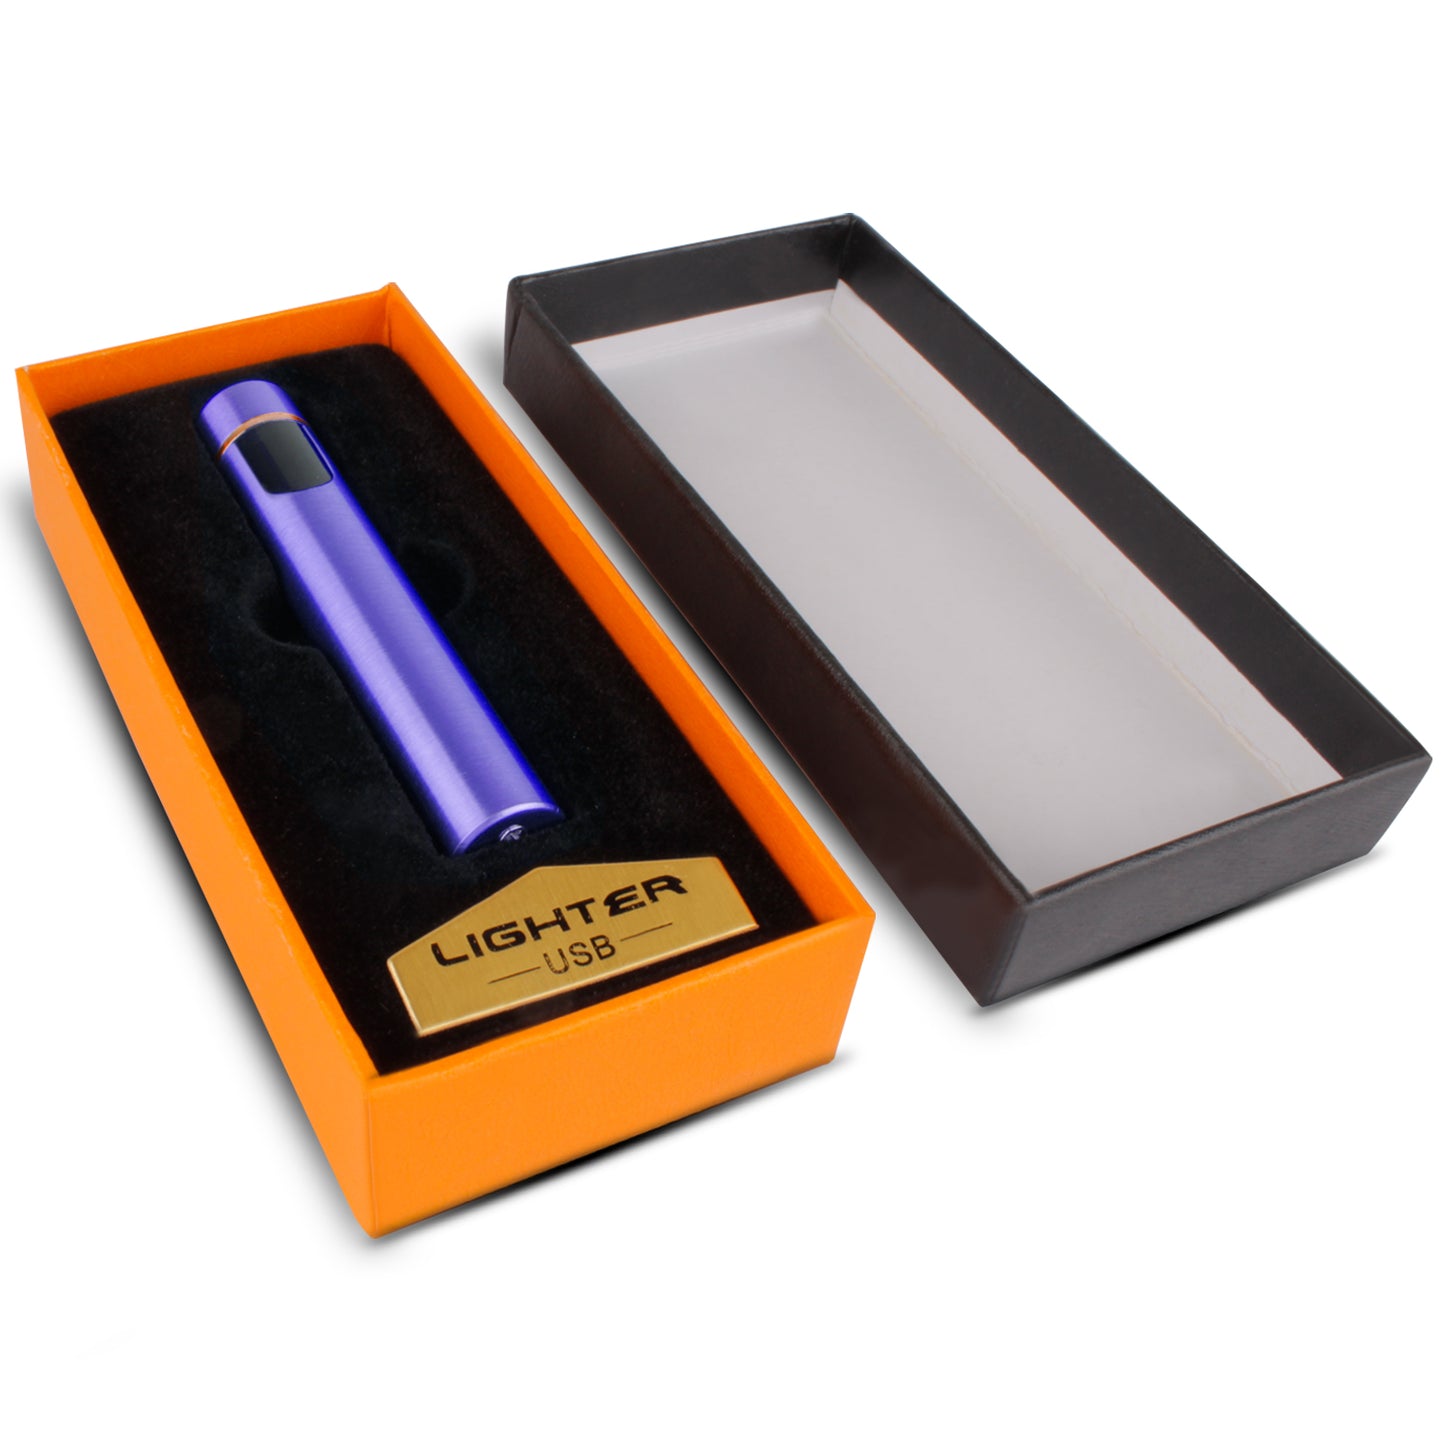 WRADER Round USB Cigarette Lighter for Men & Women(black)